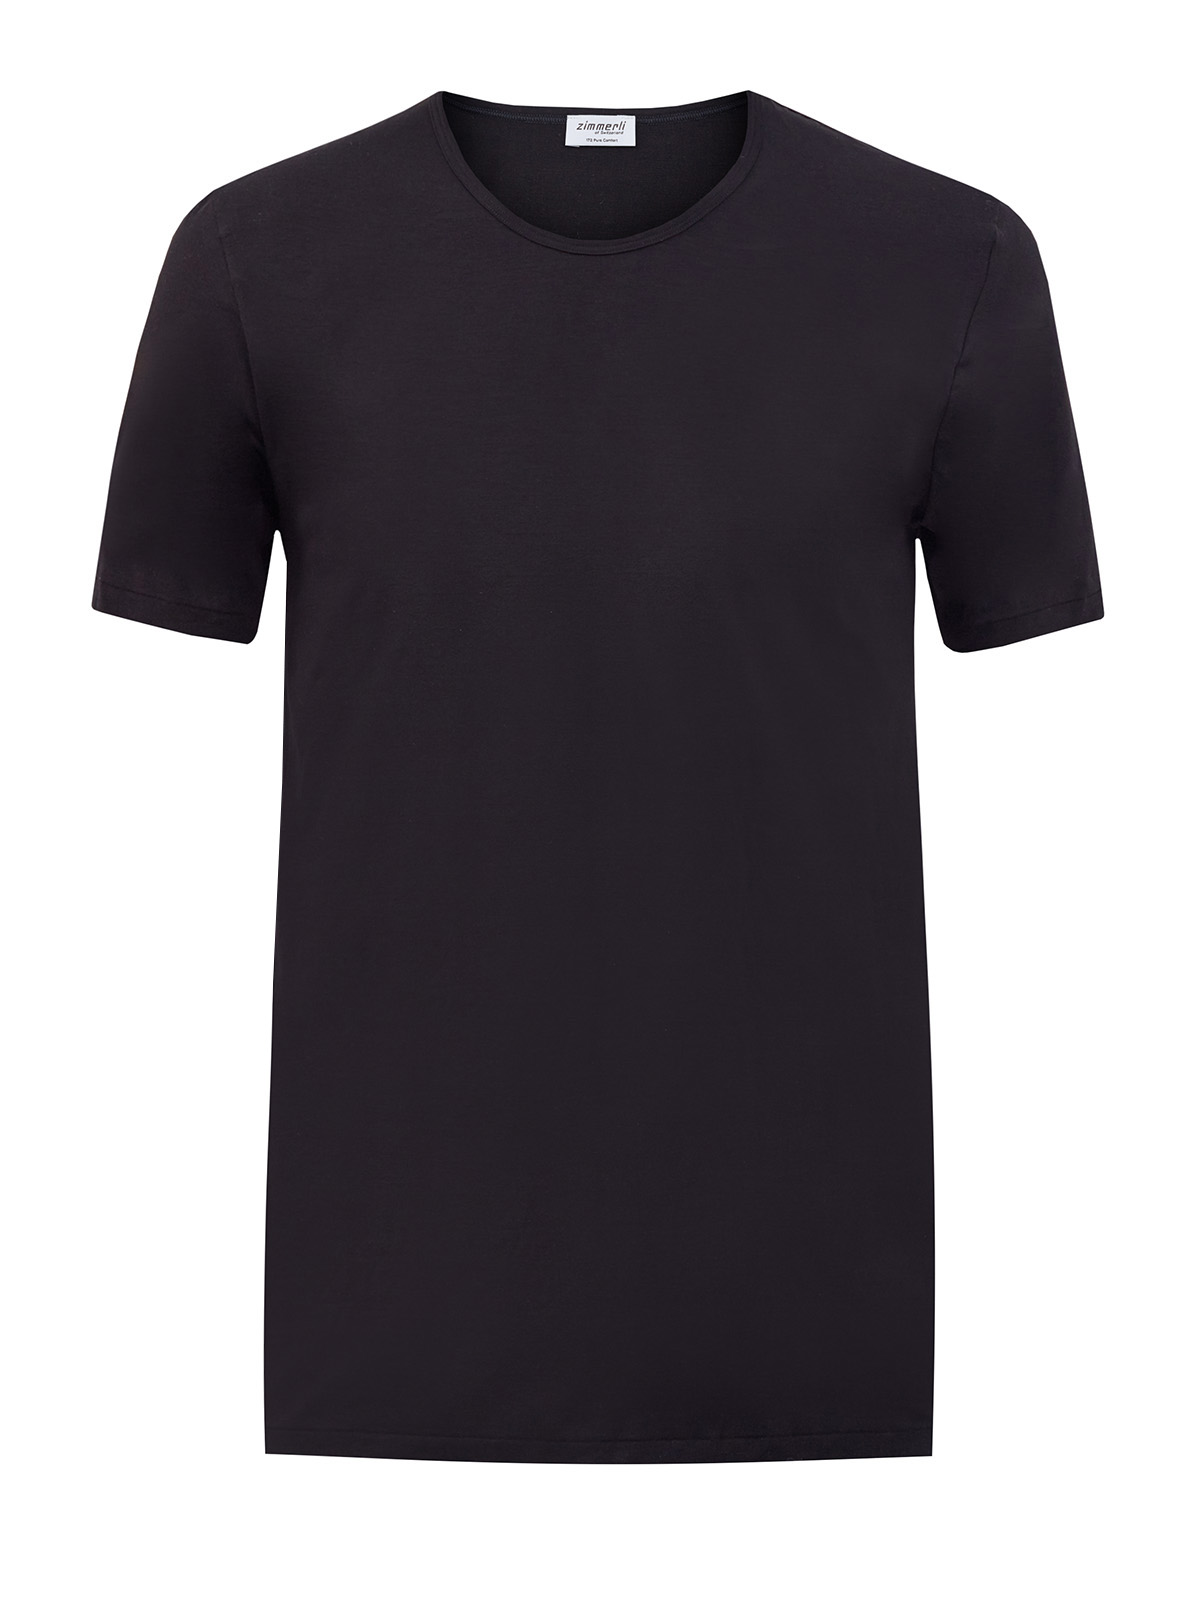 Однотонная футболка из эластичного хлопка джерси ZIMMERLI, цвет черный, размер M;L;XL